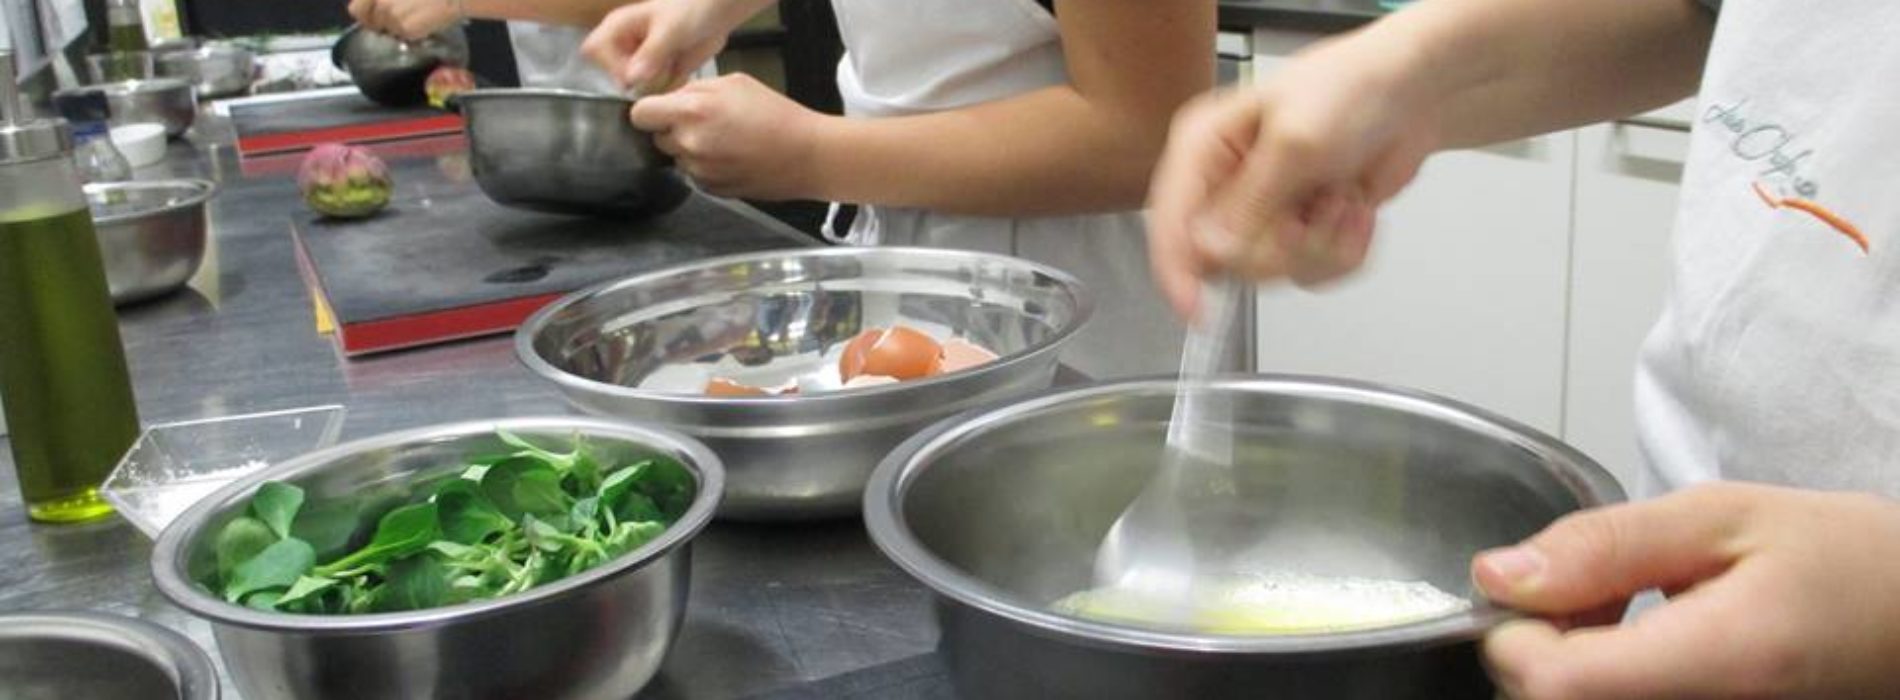 Lezioni di cucina a scuola: 4 alunni intossicati